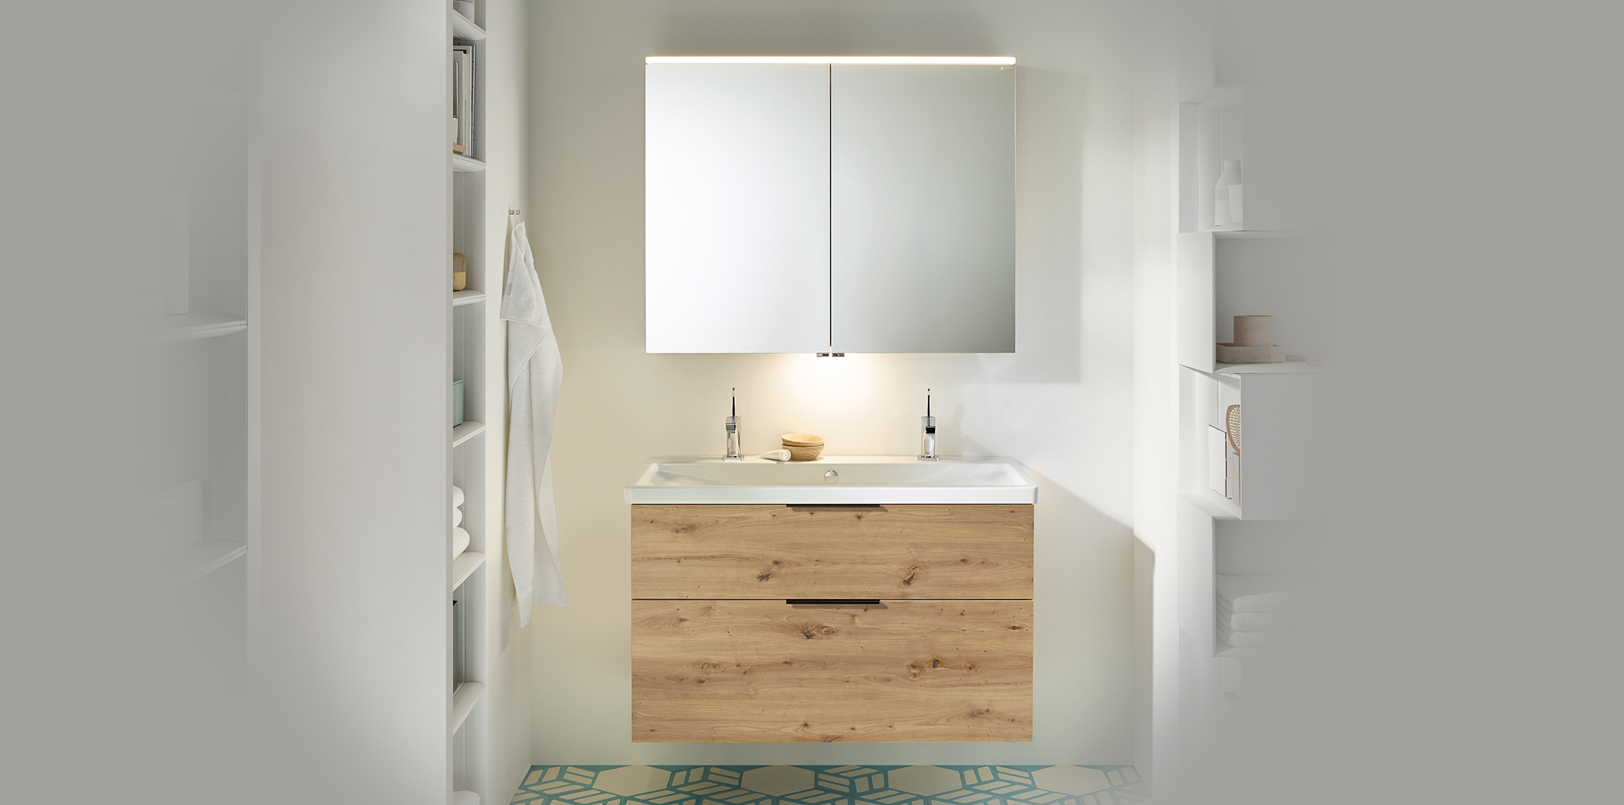 Holzverkleideter Waschtisch und Spiegelschrank in weissem Bad mit blau gemusterten Fliesen